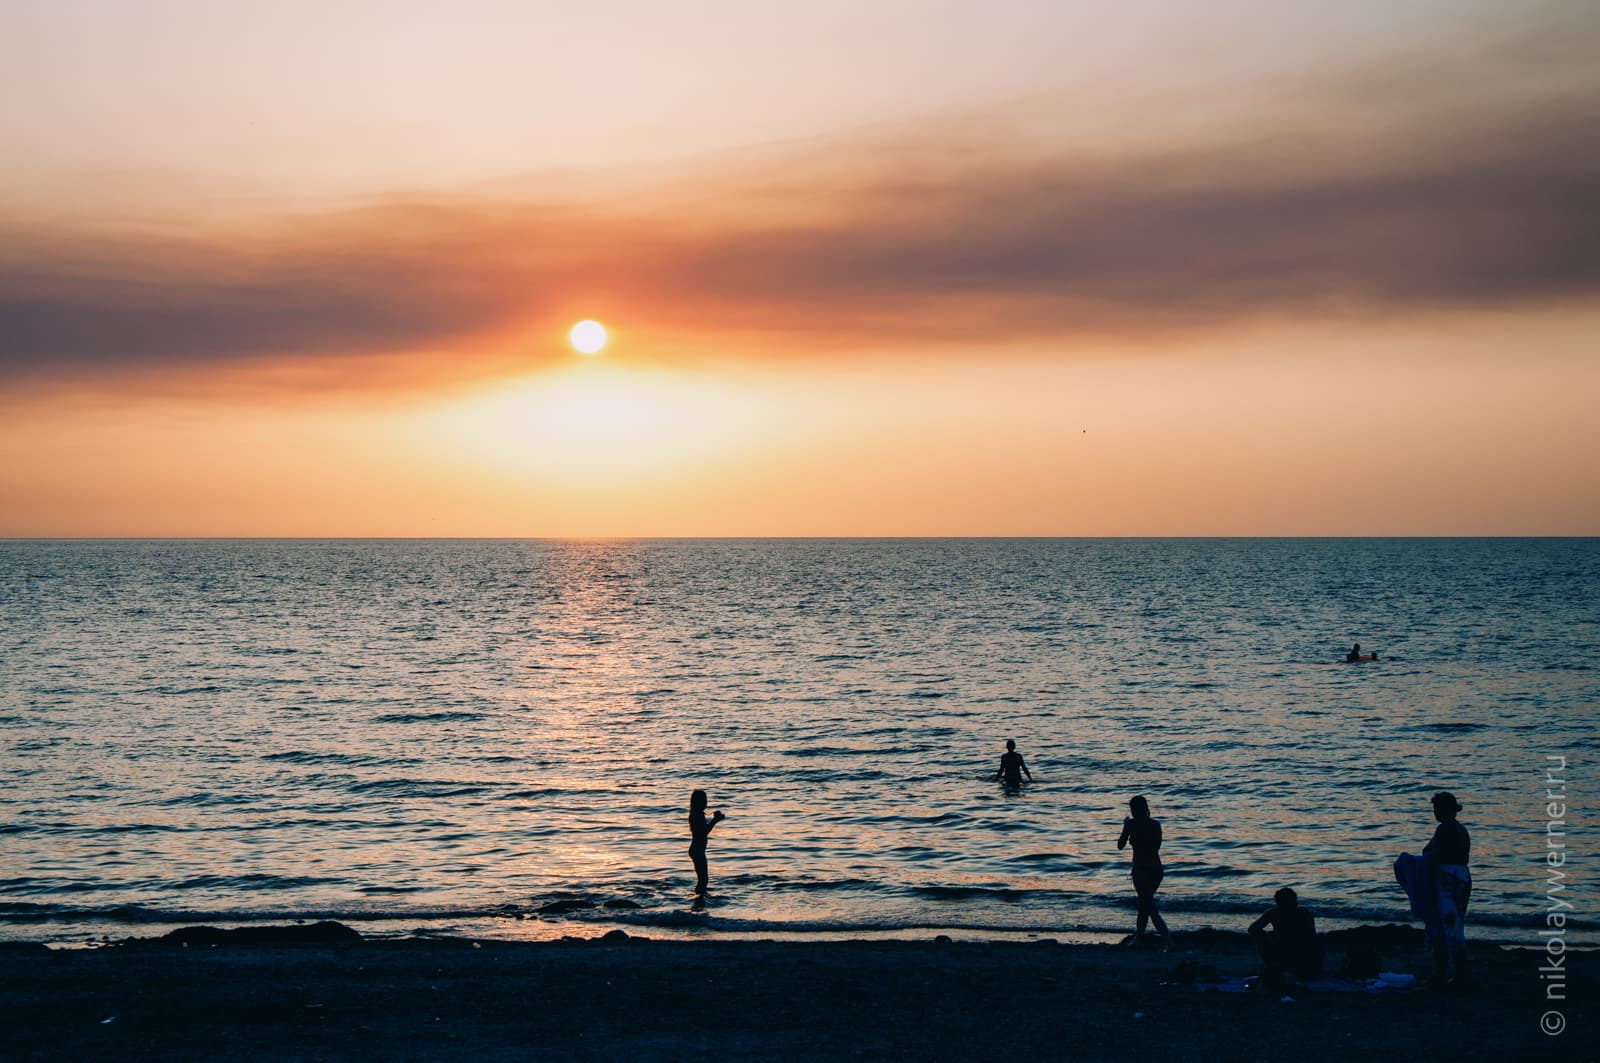 Закат. Вид с высокой набережной. Чёрная полоса берега, силуэты людей в воде и на берегу, спокойное море, шарик солнца на ладонь от горизонта и дымчатые облака.